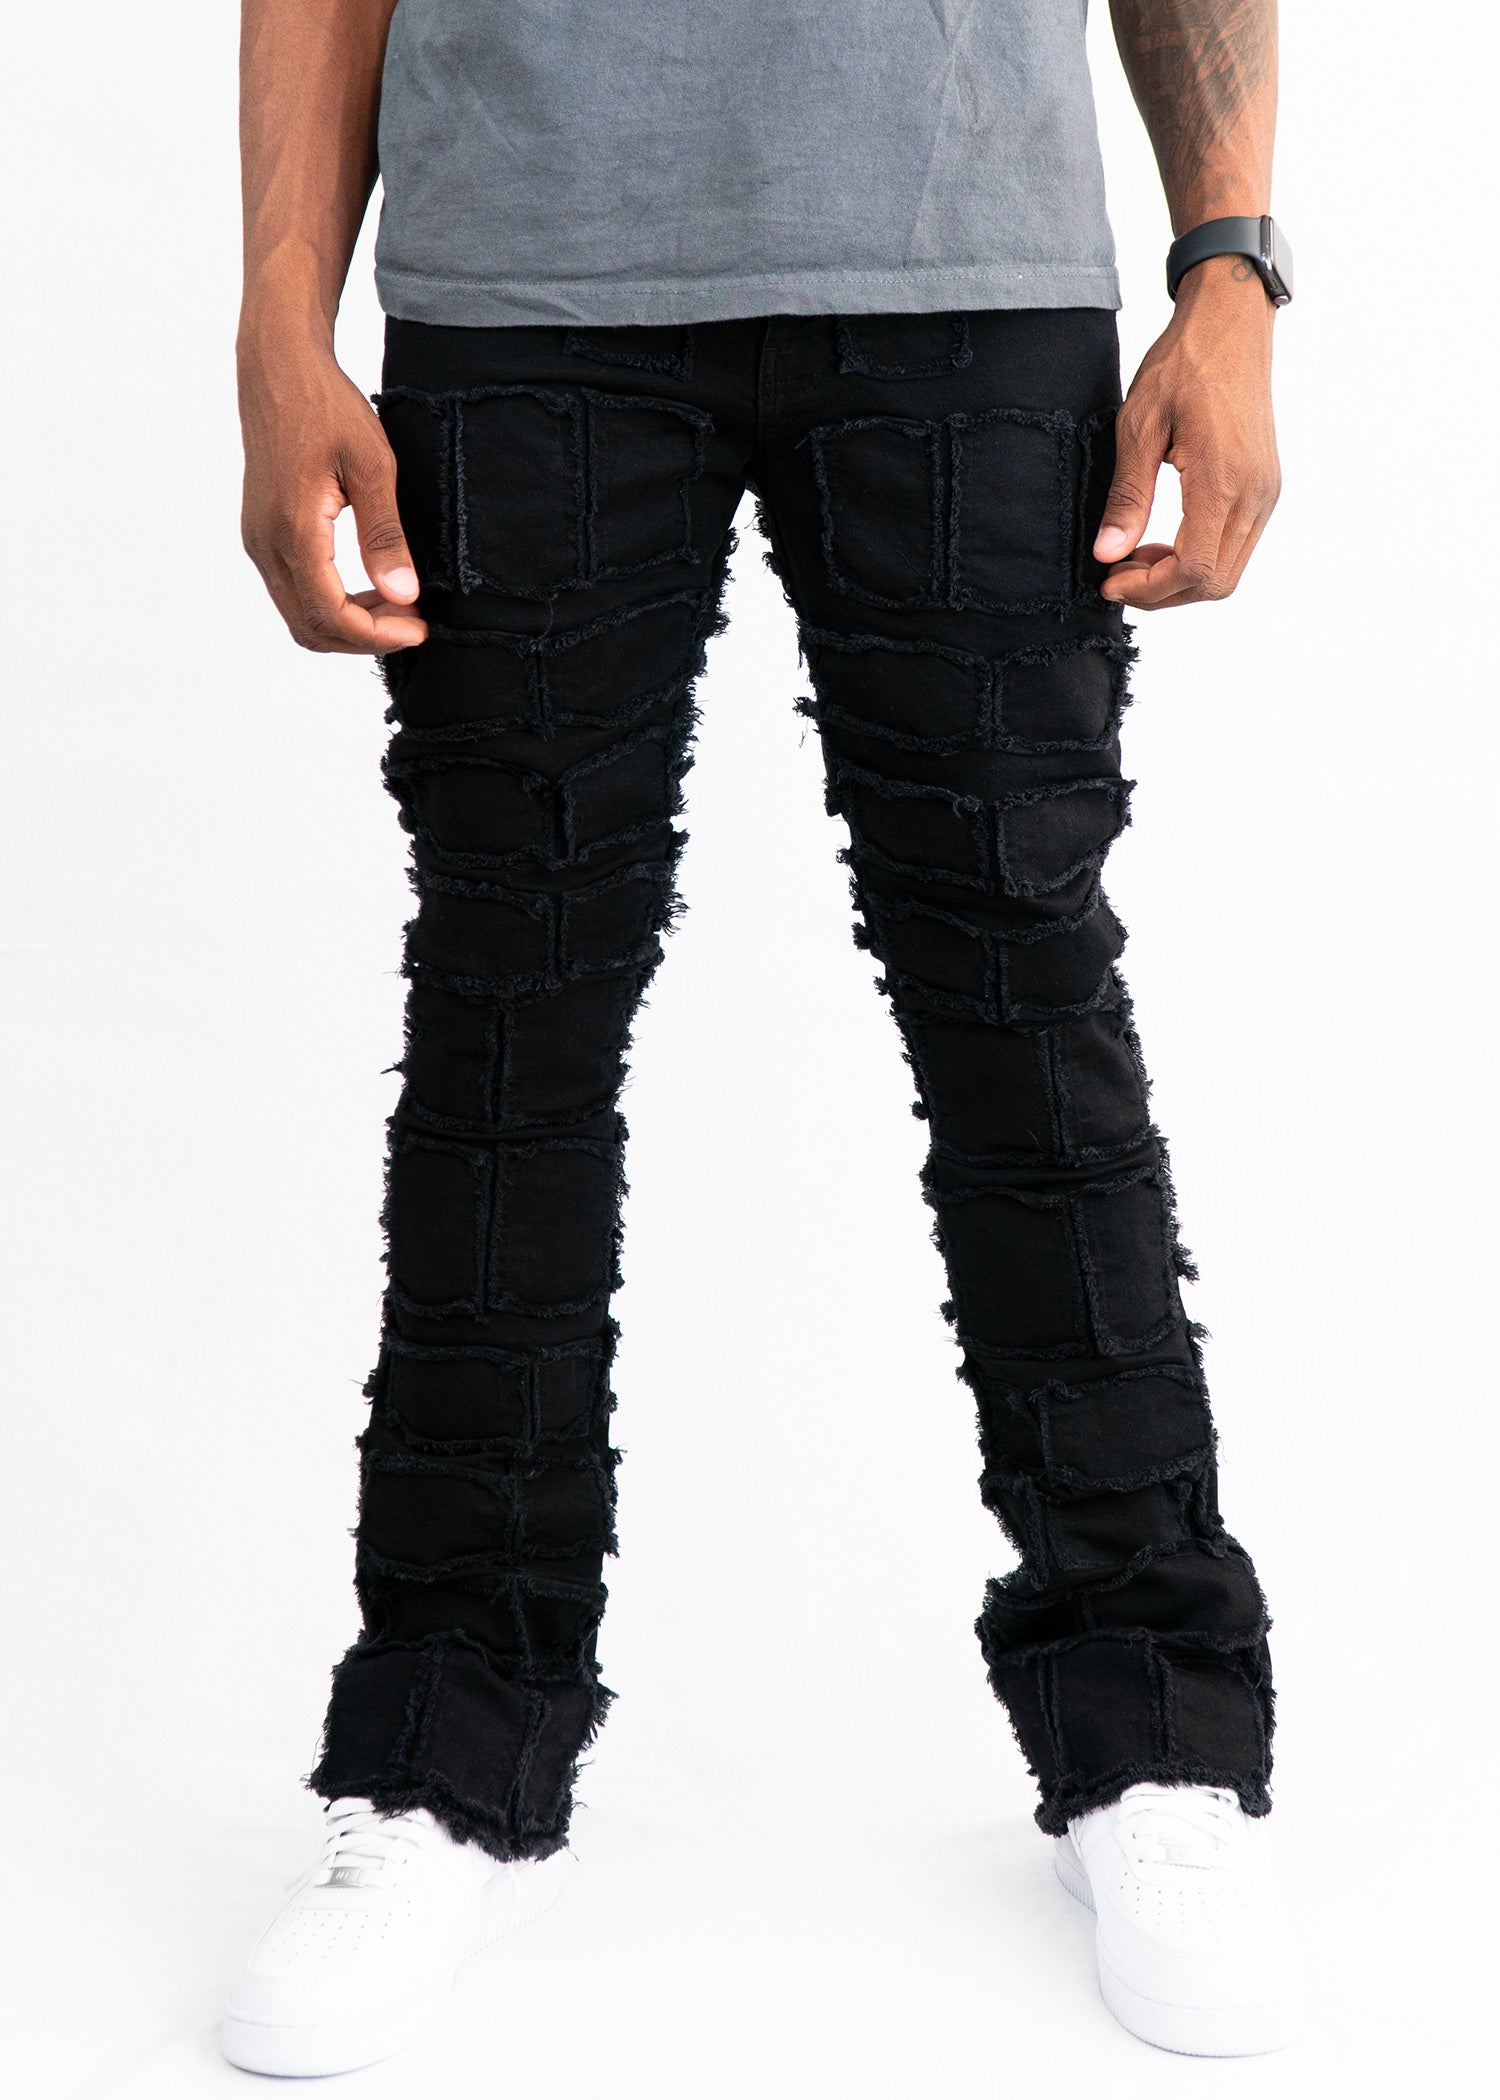 Nala Black Stacked Jeans - 95denim